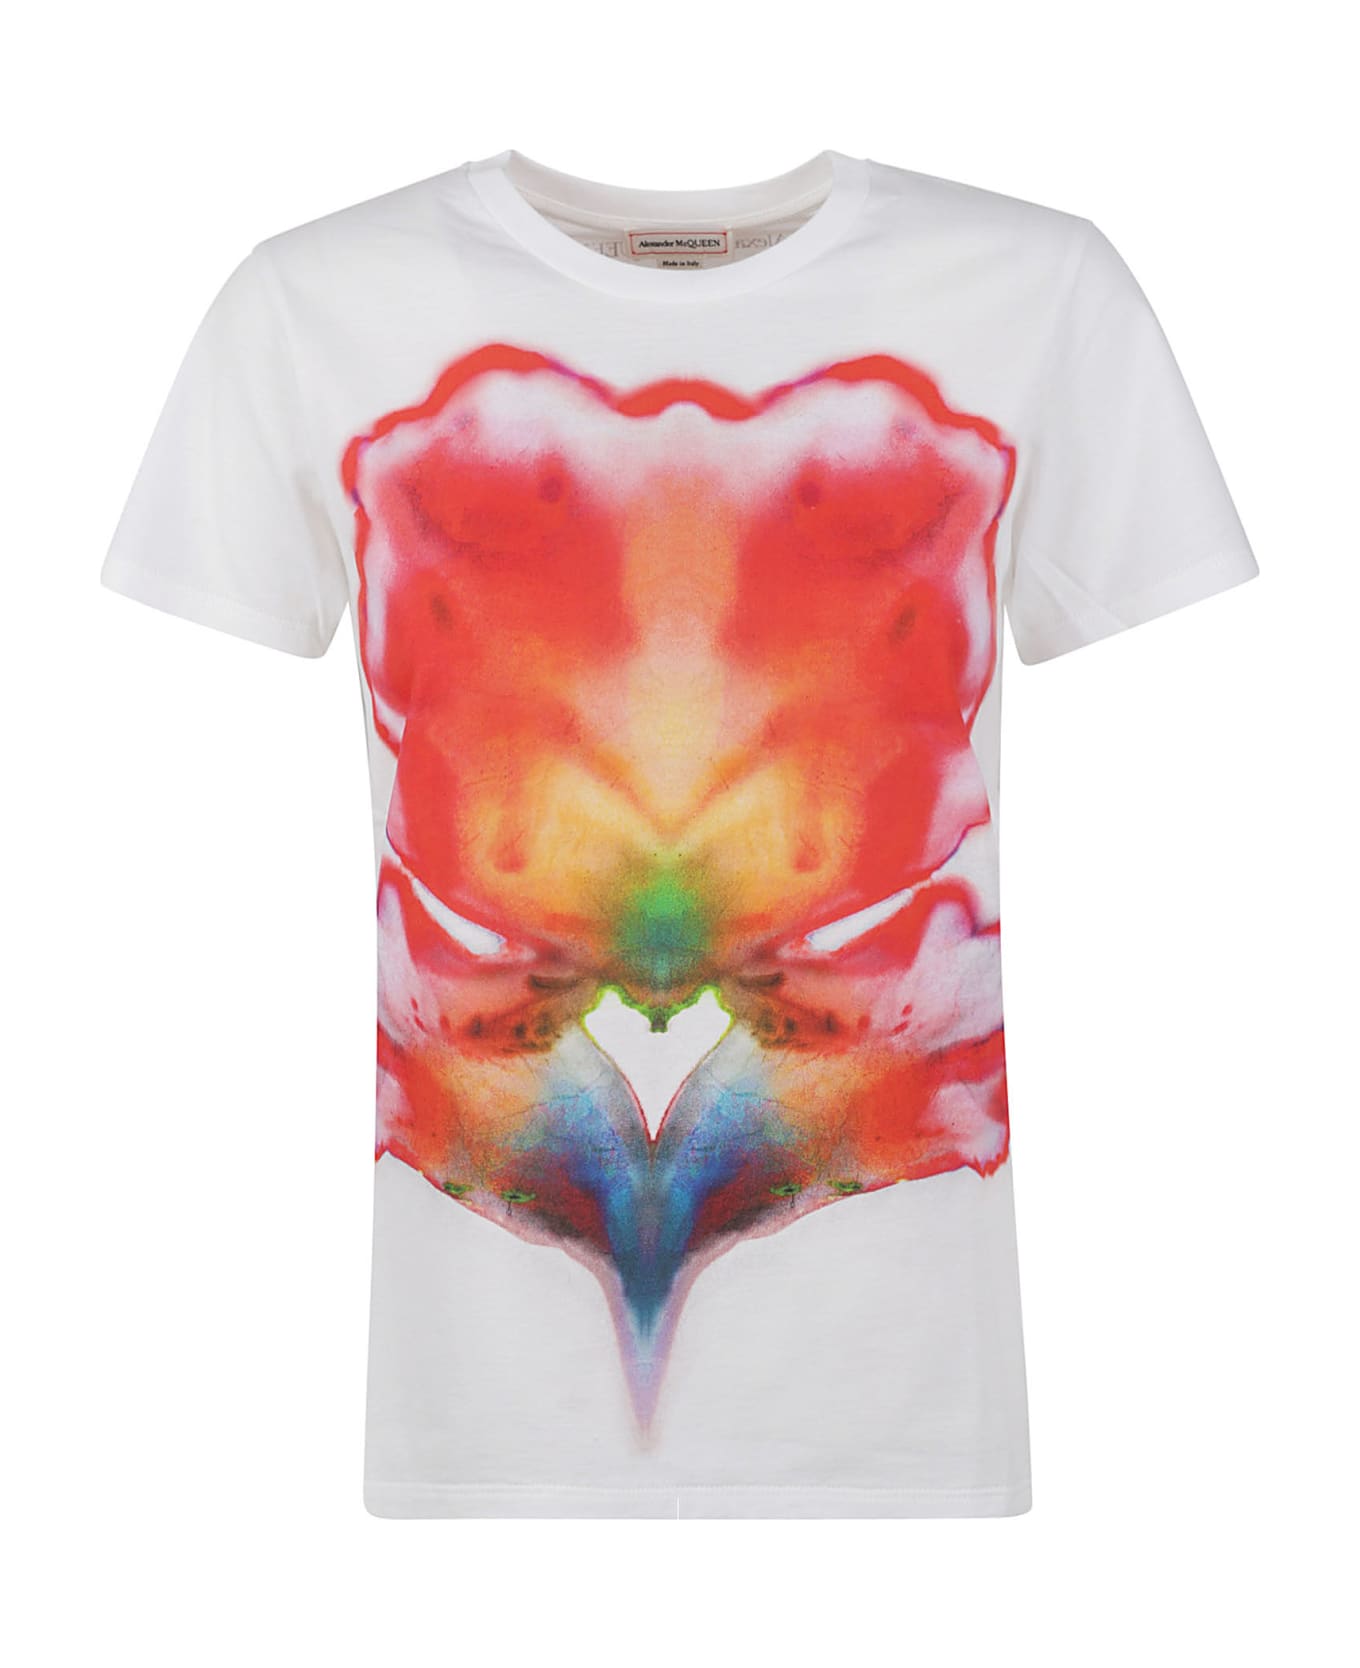 Alexander McQueen Floral Print Regular T-shirt - White Tシャツ